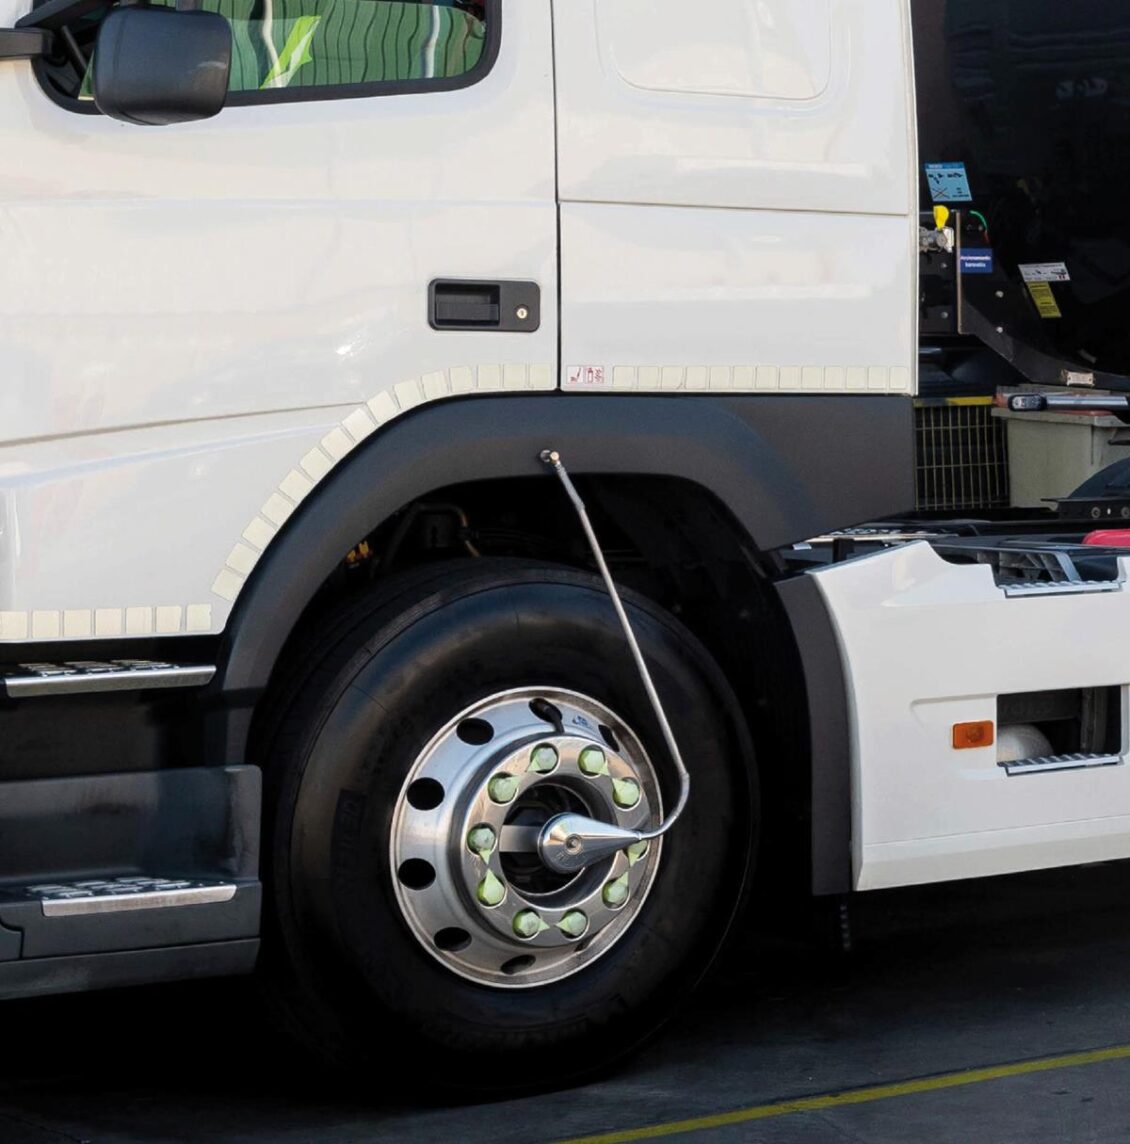 ¿Sabes lo que son estas tuberías metálicas que llevan algunos camiones en las ruedas?